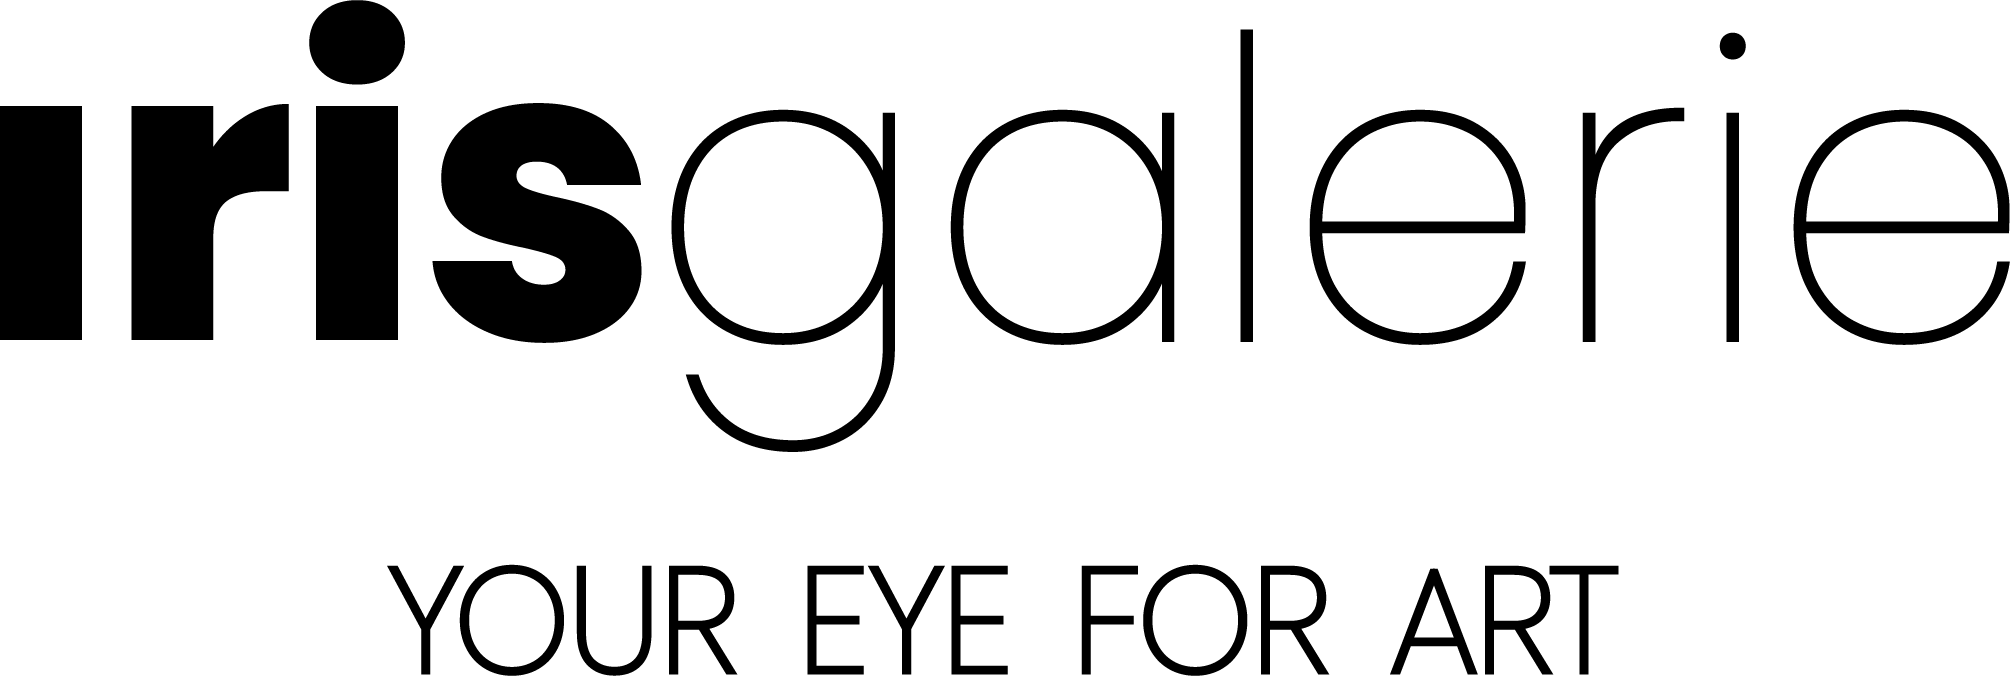 Iris galerie logo mit tagline